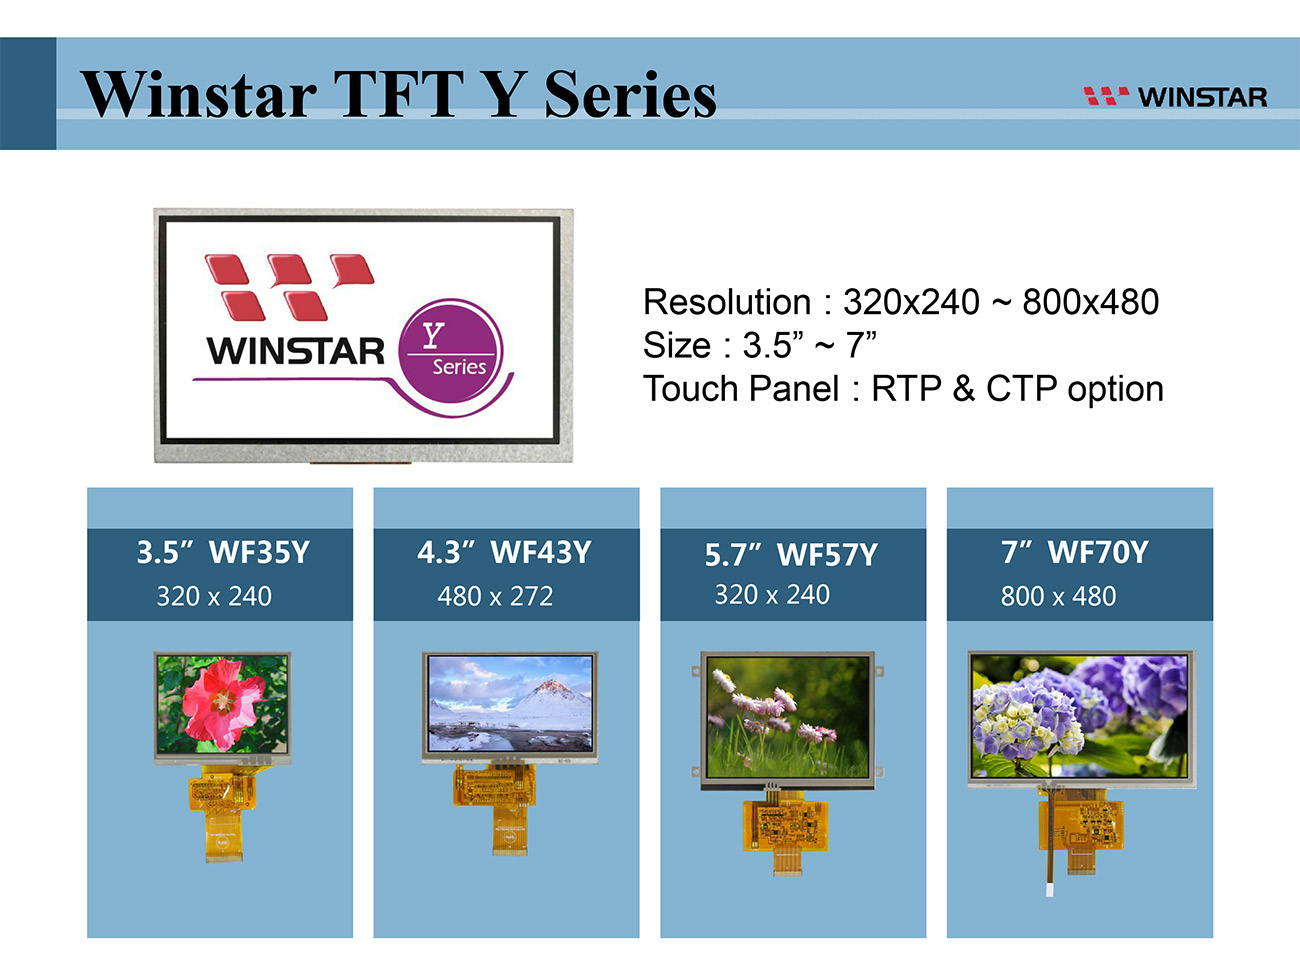 Winstar TFT LCD Y 系列 - 3.5 tft lcd, 3.5" tft lcd, tft lcd 3.5, tft lcd 3.5", 3.5 tft display, tft display 3.5, 4.3 tft lcd, 4.3 tft lcd, 4.3" tft lcd, tft lcd 4.3, tft lcd 4.3", 4.3 tft display, tft display 4.3, 5.7 tft lcd, 5.7" tft lcd, tft lcd 5.7, tft lcd 5.7", 5.7 tft display, tft display 5.7, 7 tft lcd, 7" tft lcd, tft lcd 7, tft lcd 7", 7 tft display, tft display 7, 7.0 tft lcd, 7.0 tft display